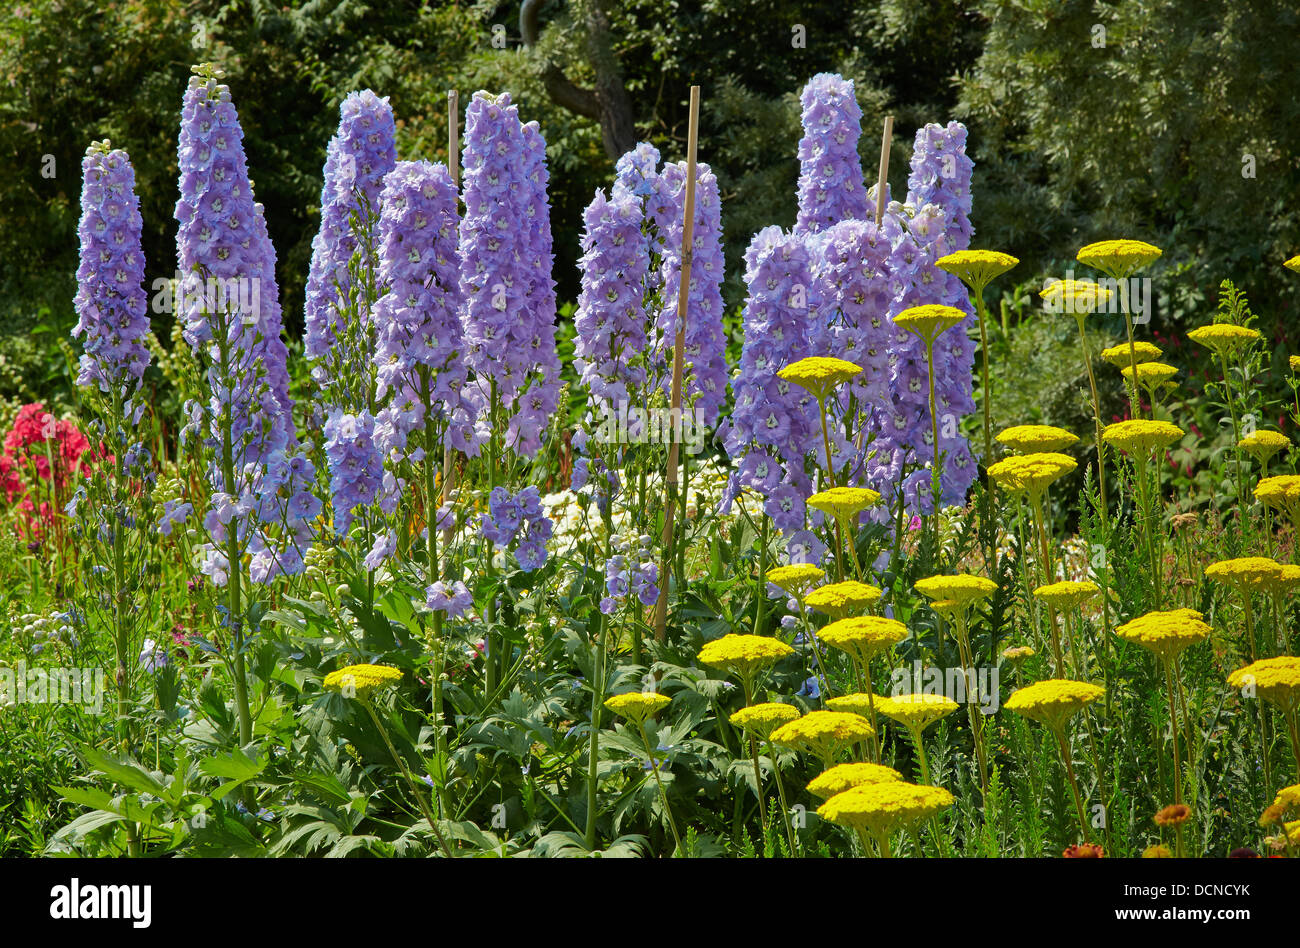 Blassen blauen Rittersporn und gelbe Achillea bilden eine interessante Vereinigung in einer englischen krautige Grenzübergang Waterperry Gärten Stockfoto